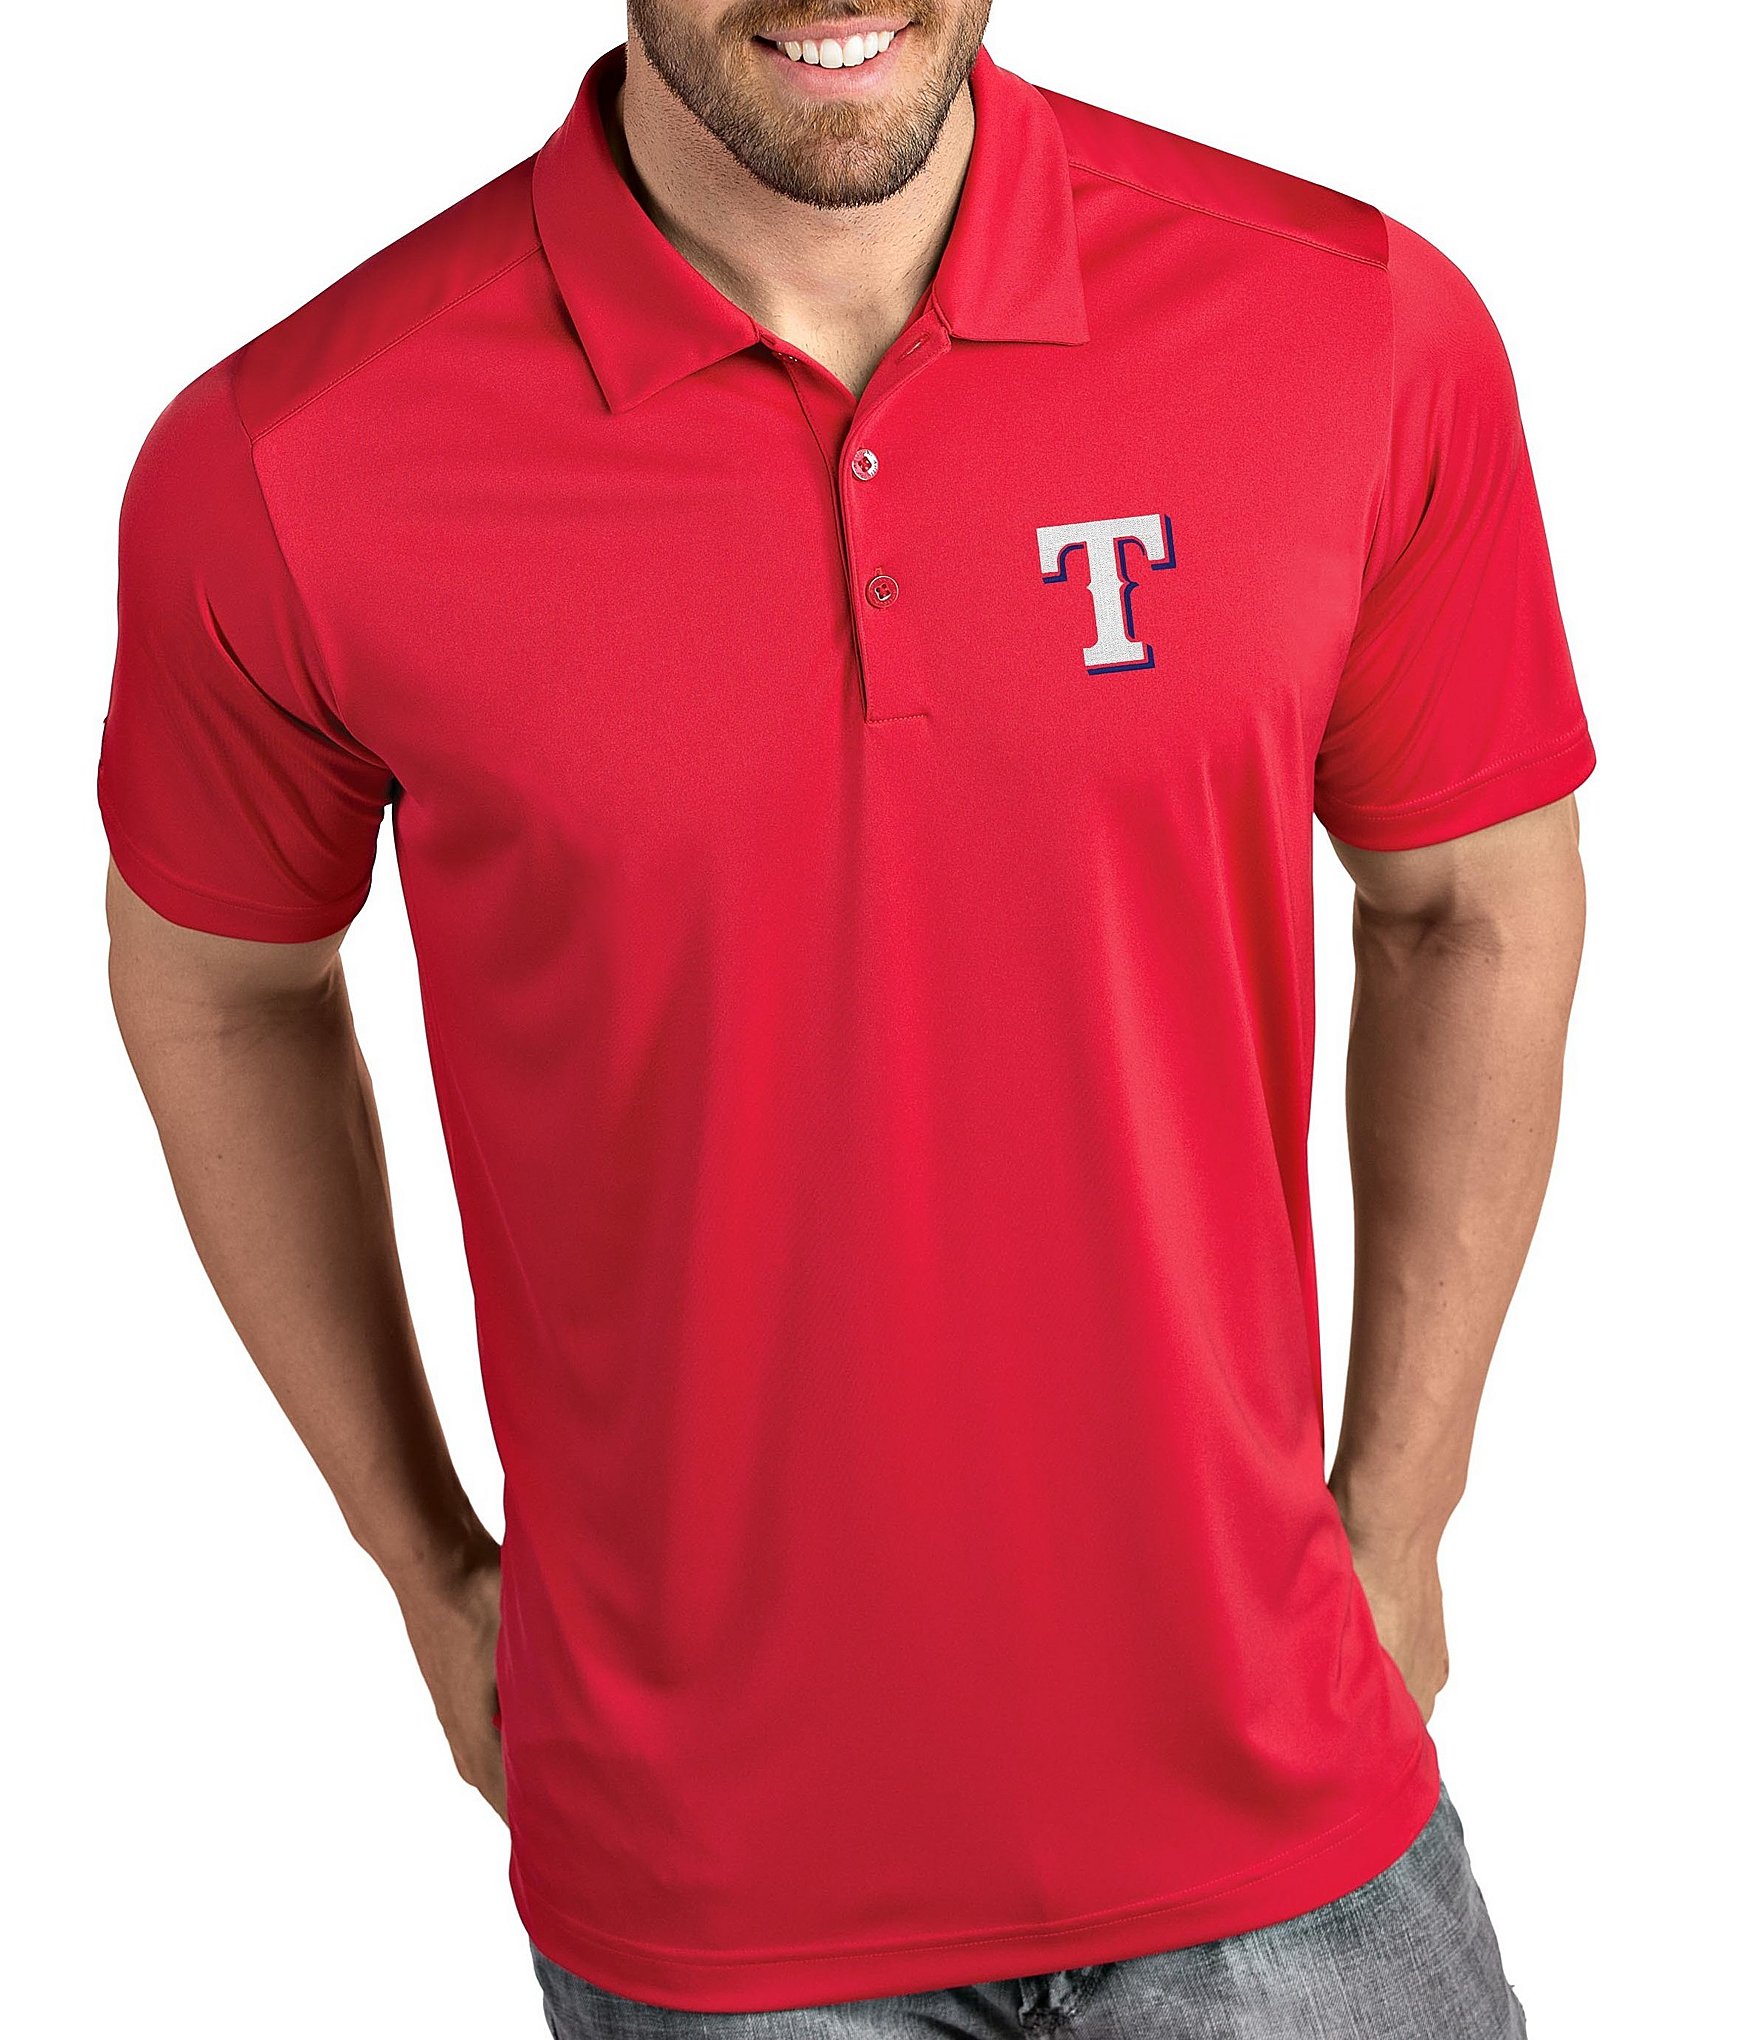 Men's Antigua Texas Rangers Tribute Polo, Size: XL, Red